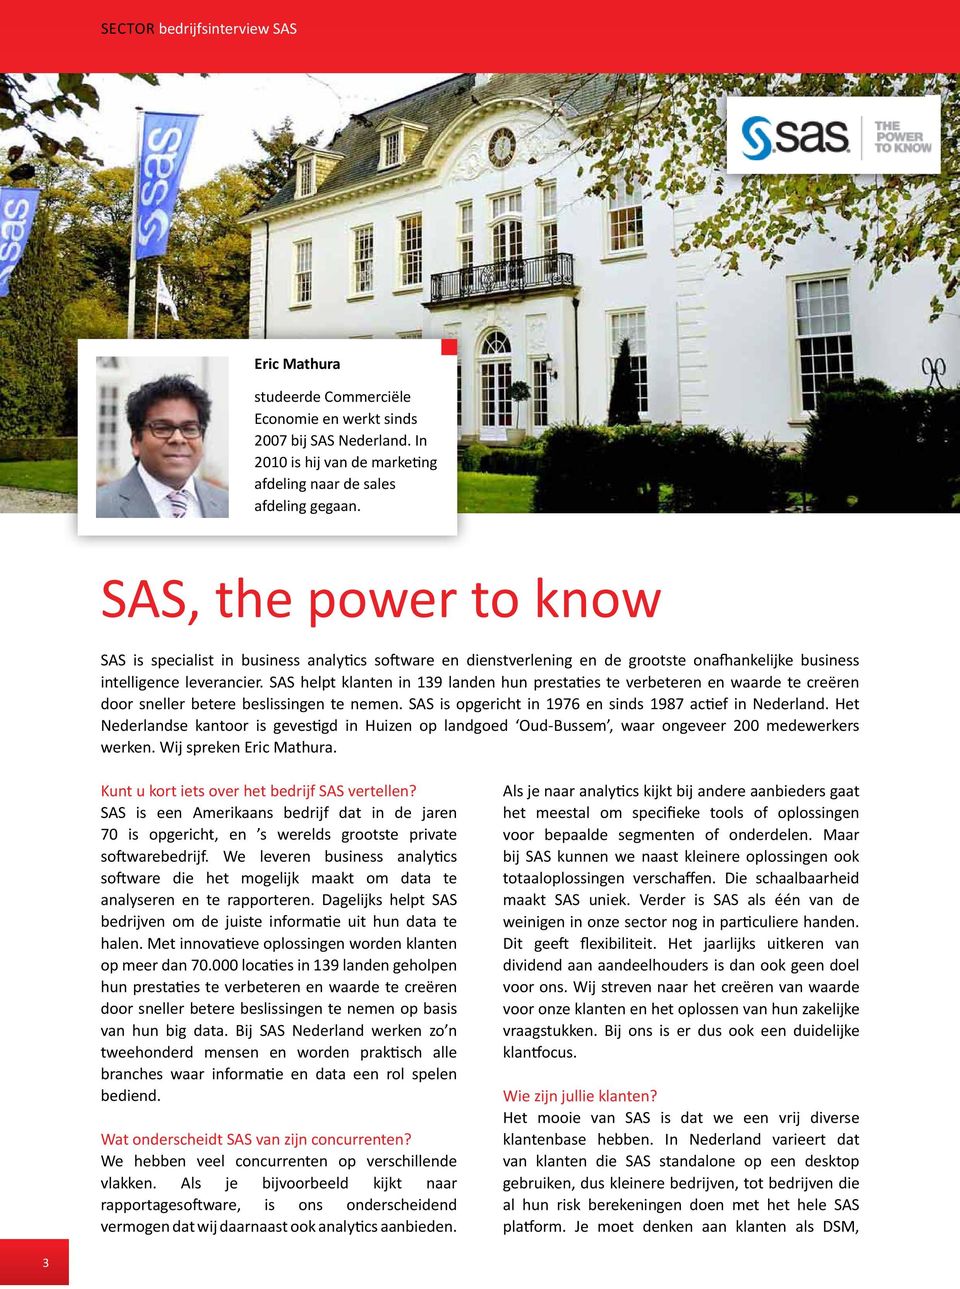 SAS helpt klanten in 139 landen hun prestaties te verbeteren en waarde te creëren door sneller betere beslissingen te nemen. SAS is opgericht in 1976 en sinds 1987 actief in Nederland.